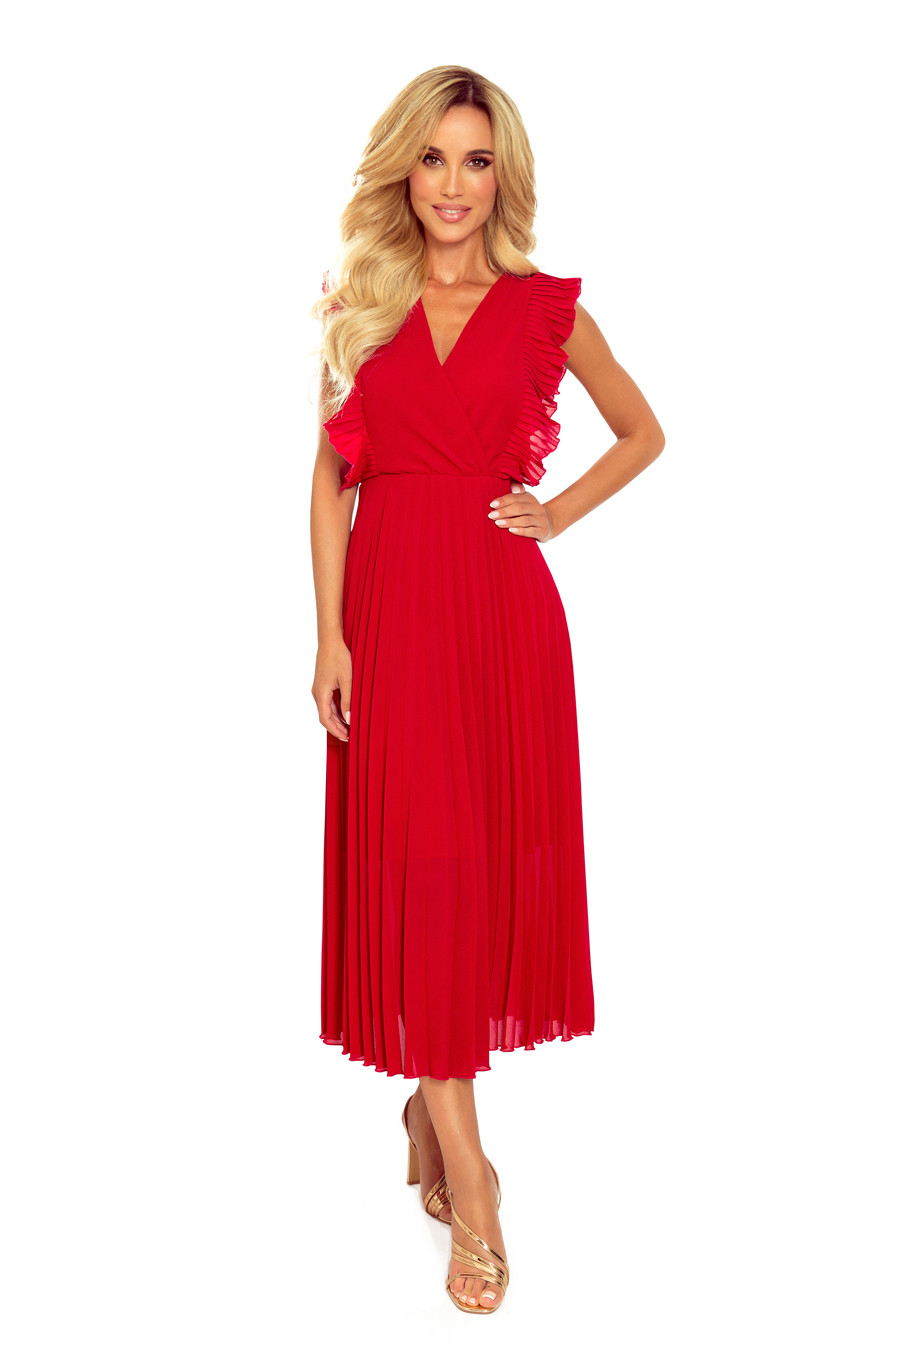 Dámské šaty Červená M model 14700013 - numoco